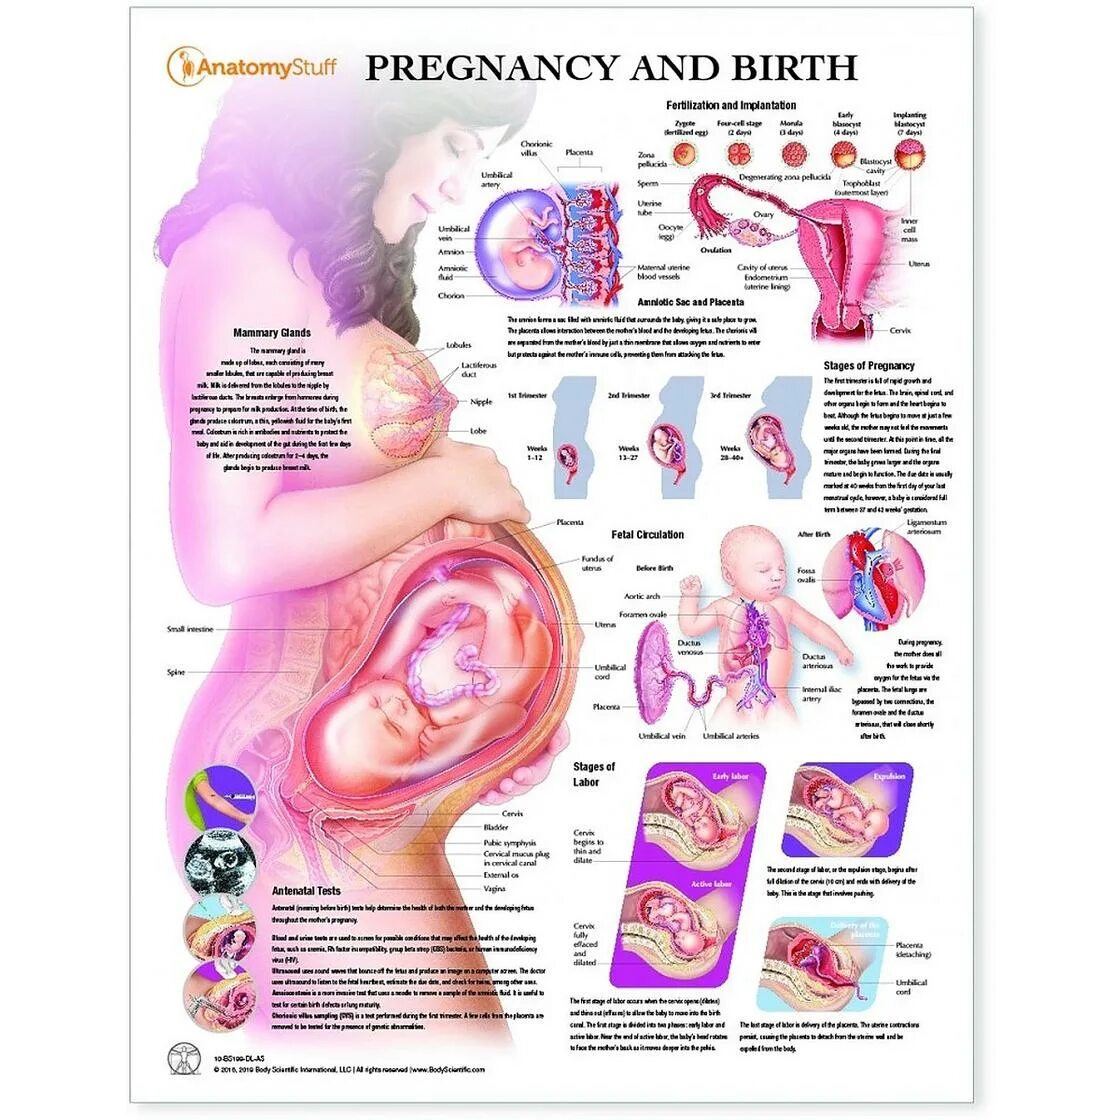 34 недели что происходит с мамой. Положение ребенка в животе на 33 неделе беременности. Плод в животе матери схема. Положение органов на 32 неделе беременности. Эмбрион 34 недели беременности вес плода.